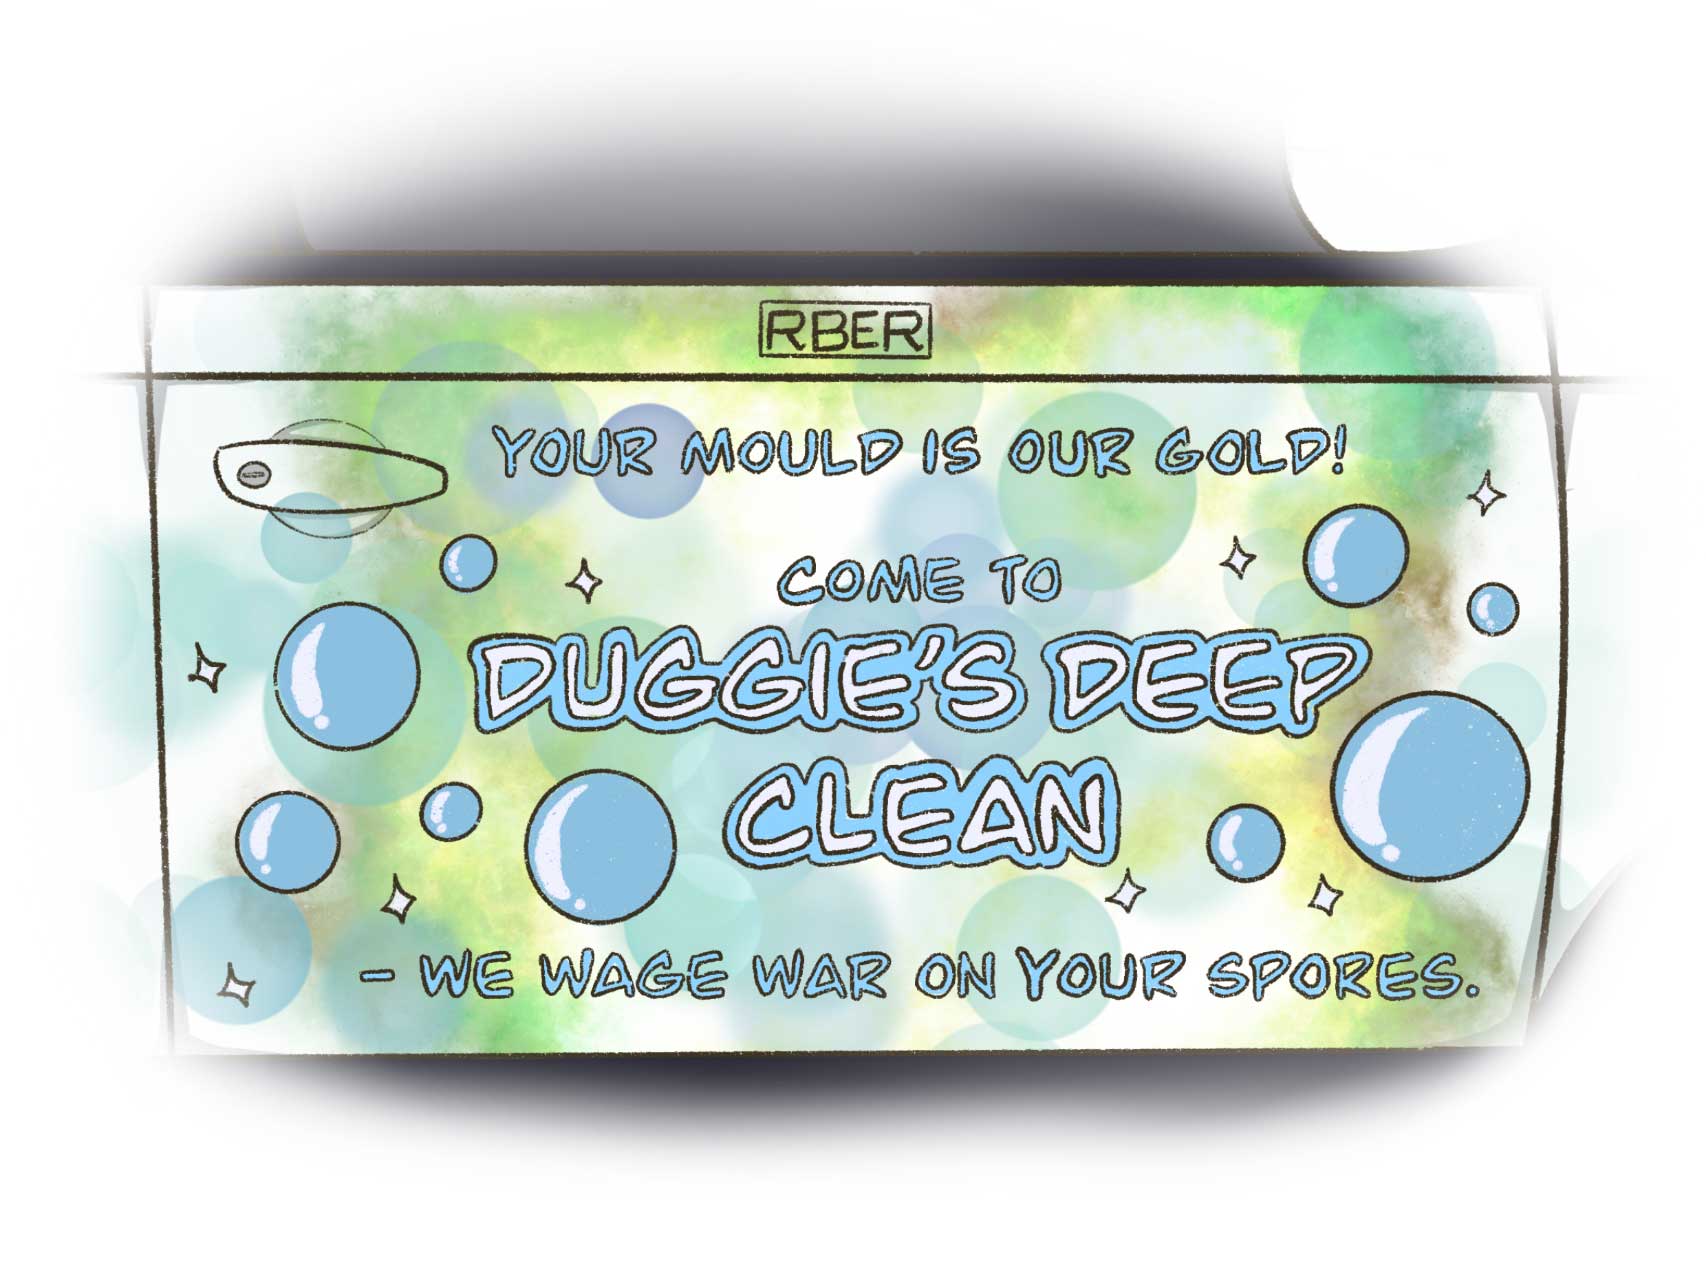 Duggie's Deep Clean Advert